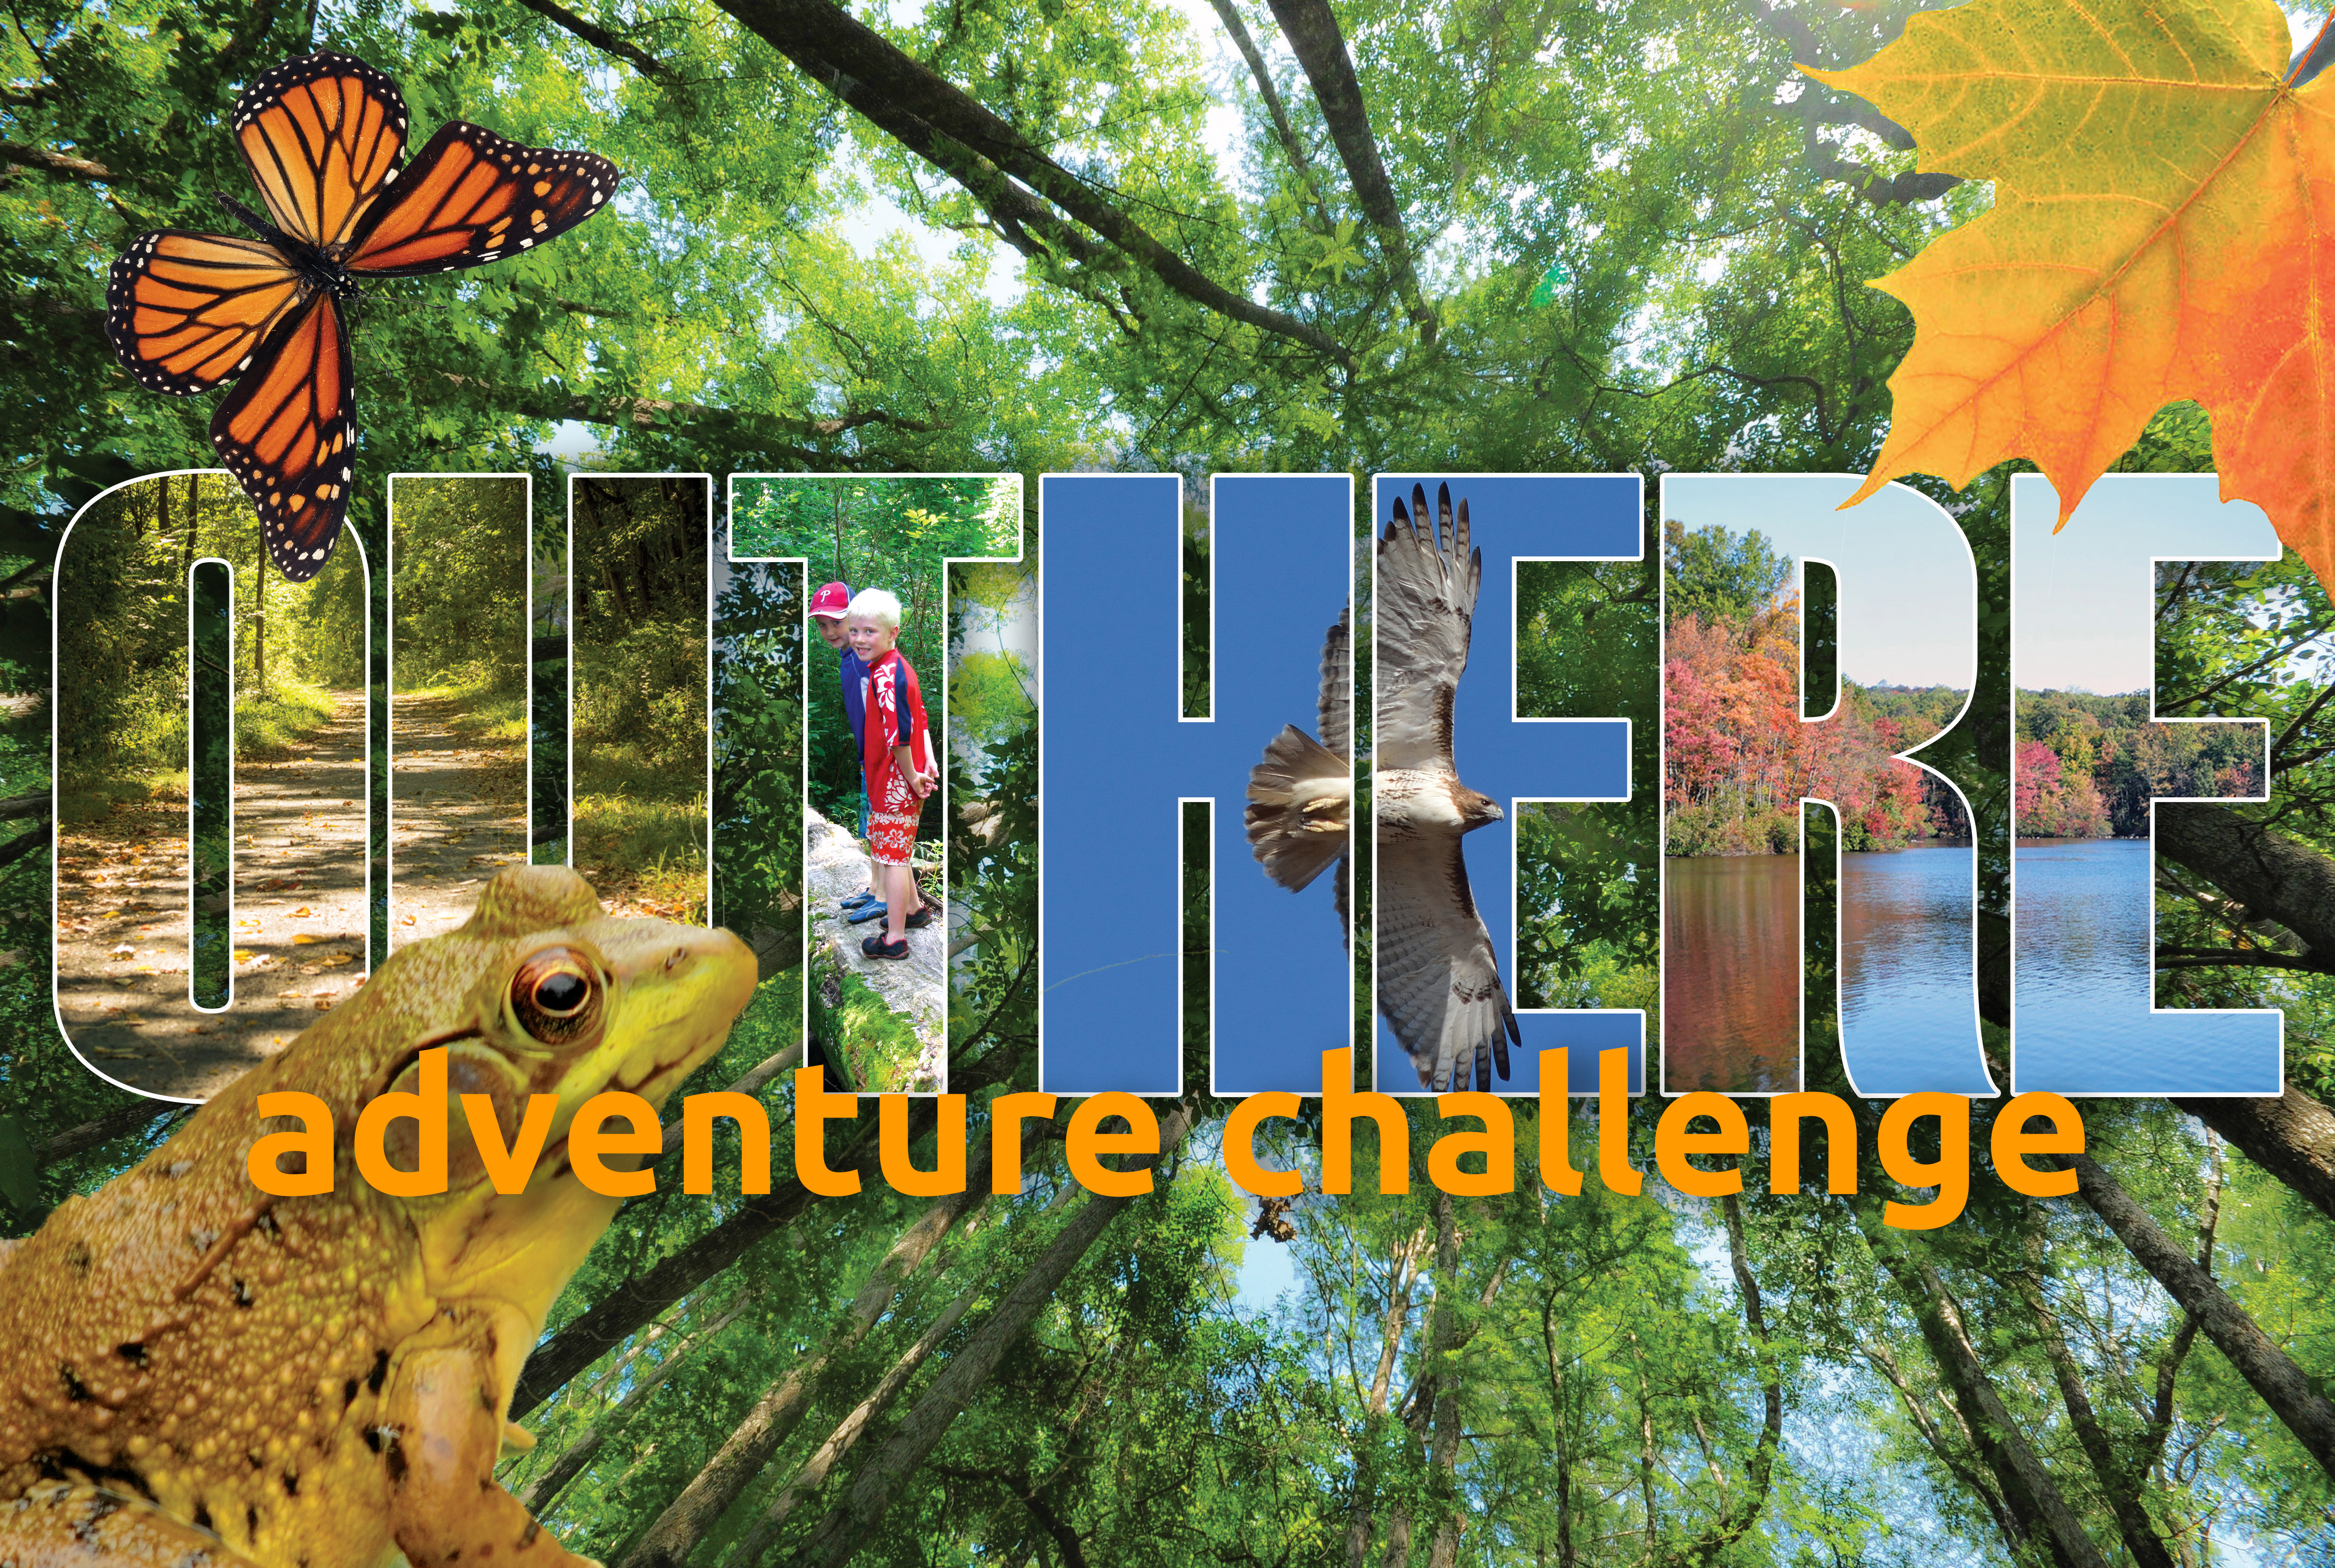 Schuylkill Highlands Adventure Challenge